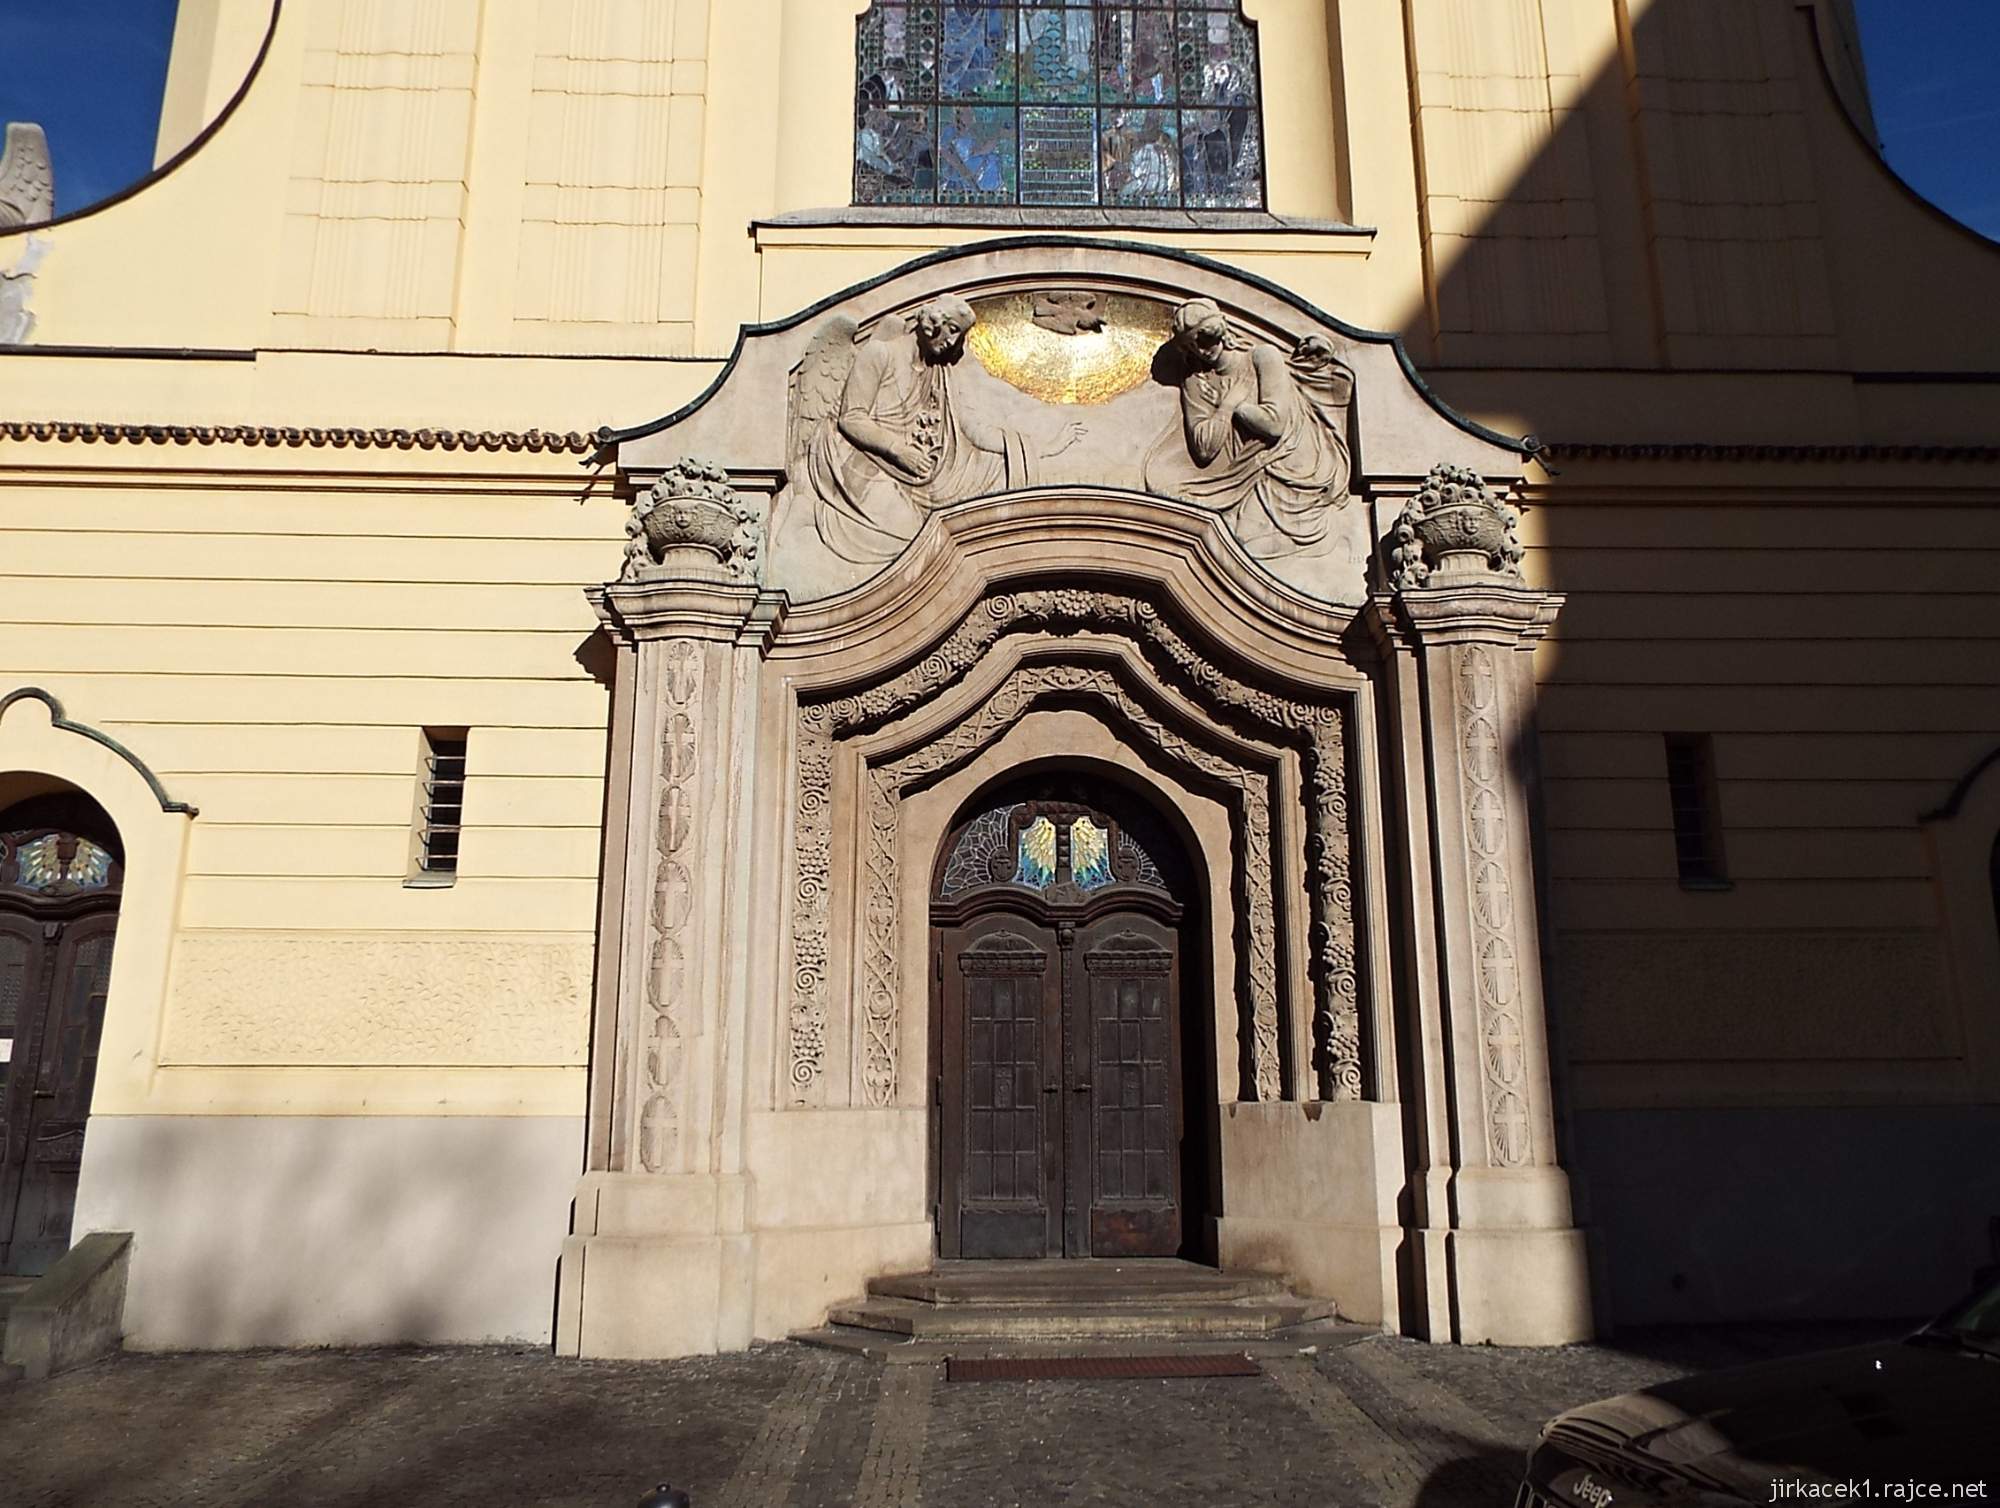 B - Brno - Kostel Neposkvrněného početí Panny Marie 05 - portál z umělého kamene s reliéfem zvěstování Panny Marie a holubicí